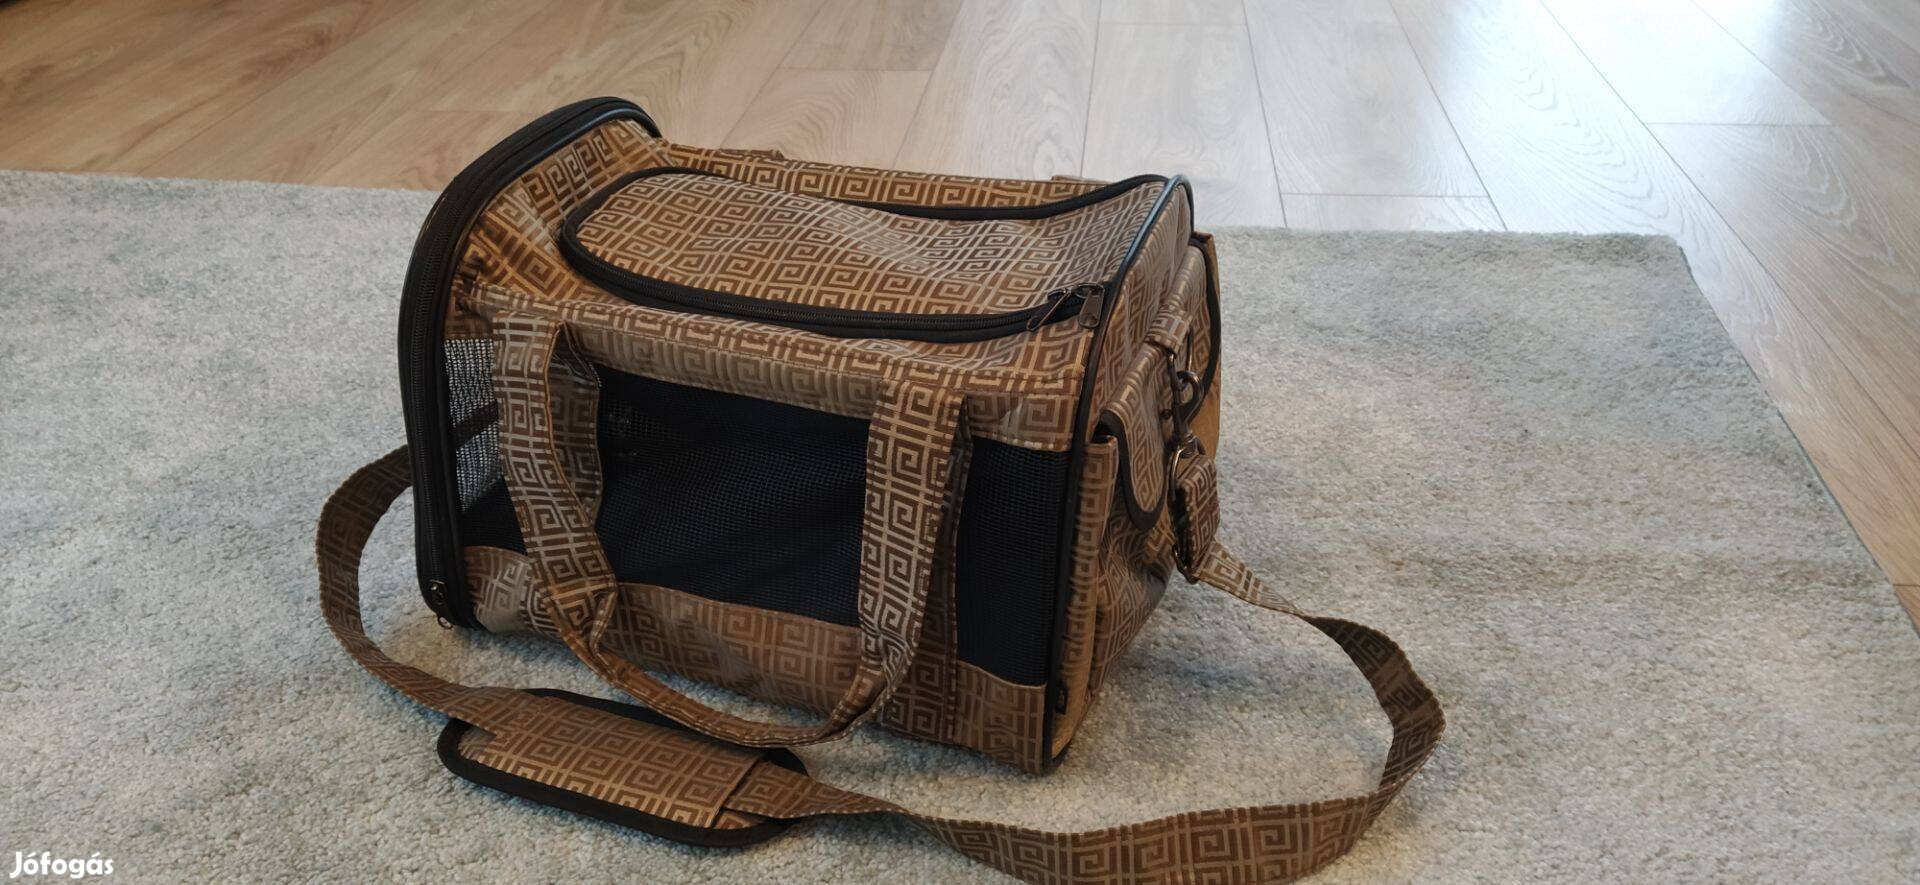 Kutyaszállító / kutyahordozó táska vállpánttal, óarany mintás eladó